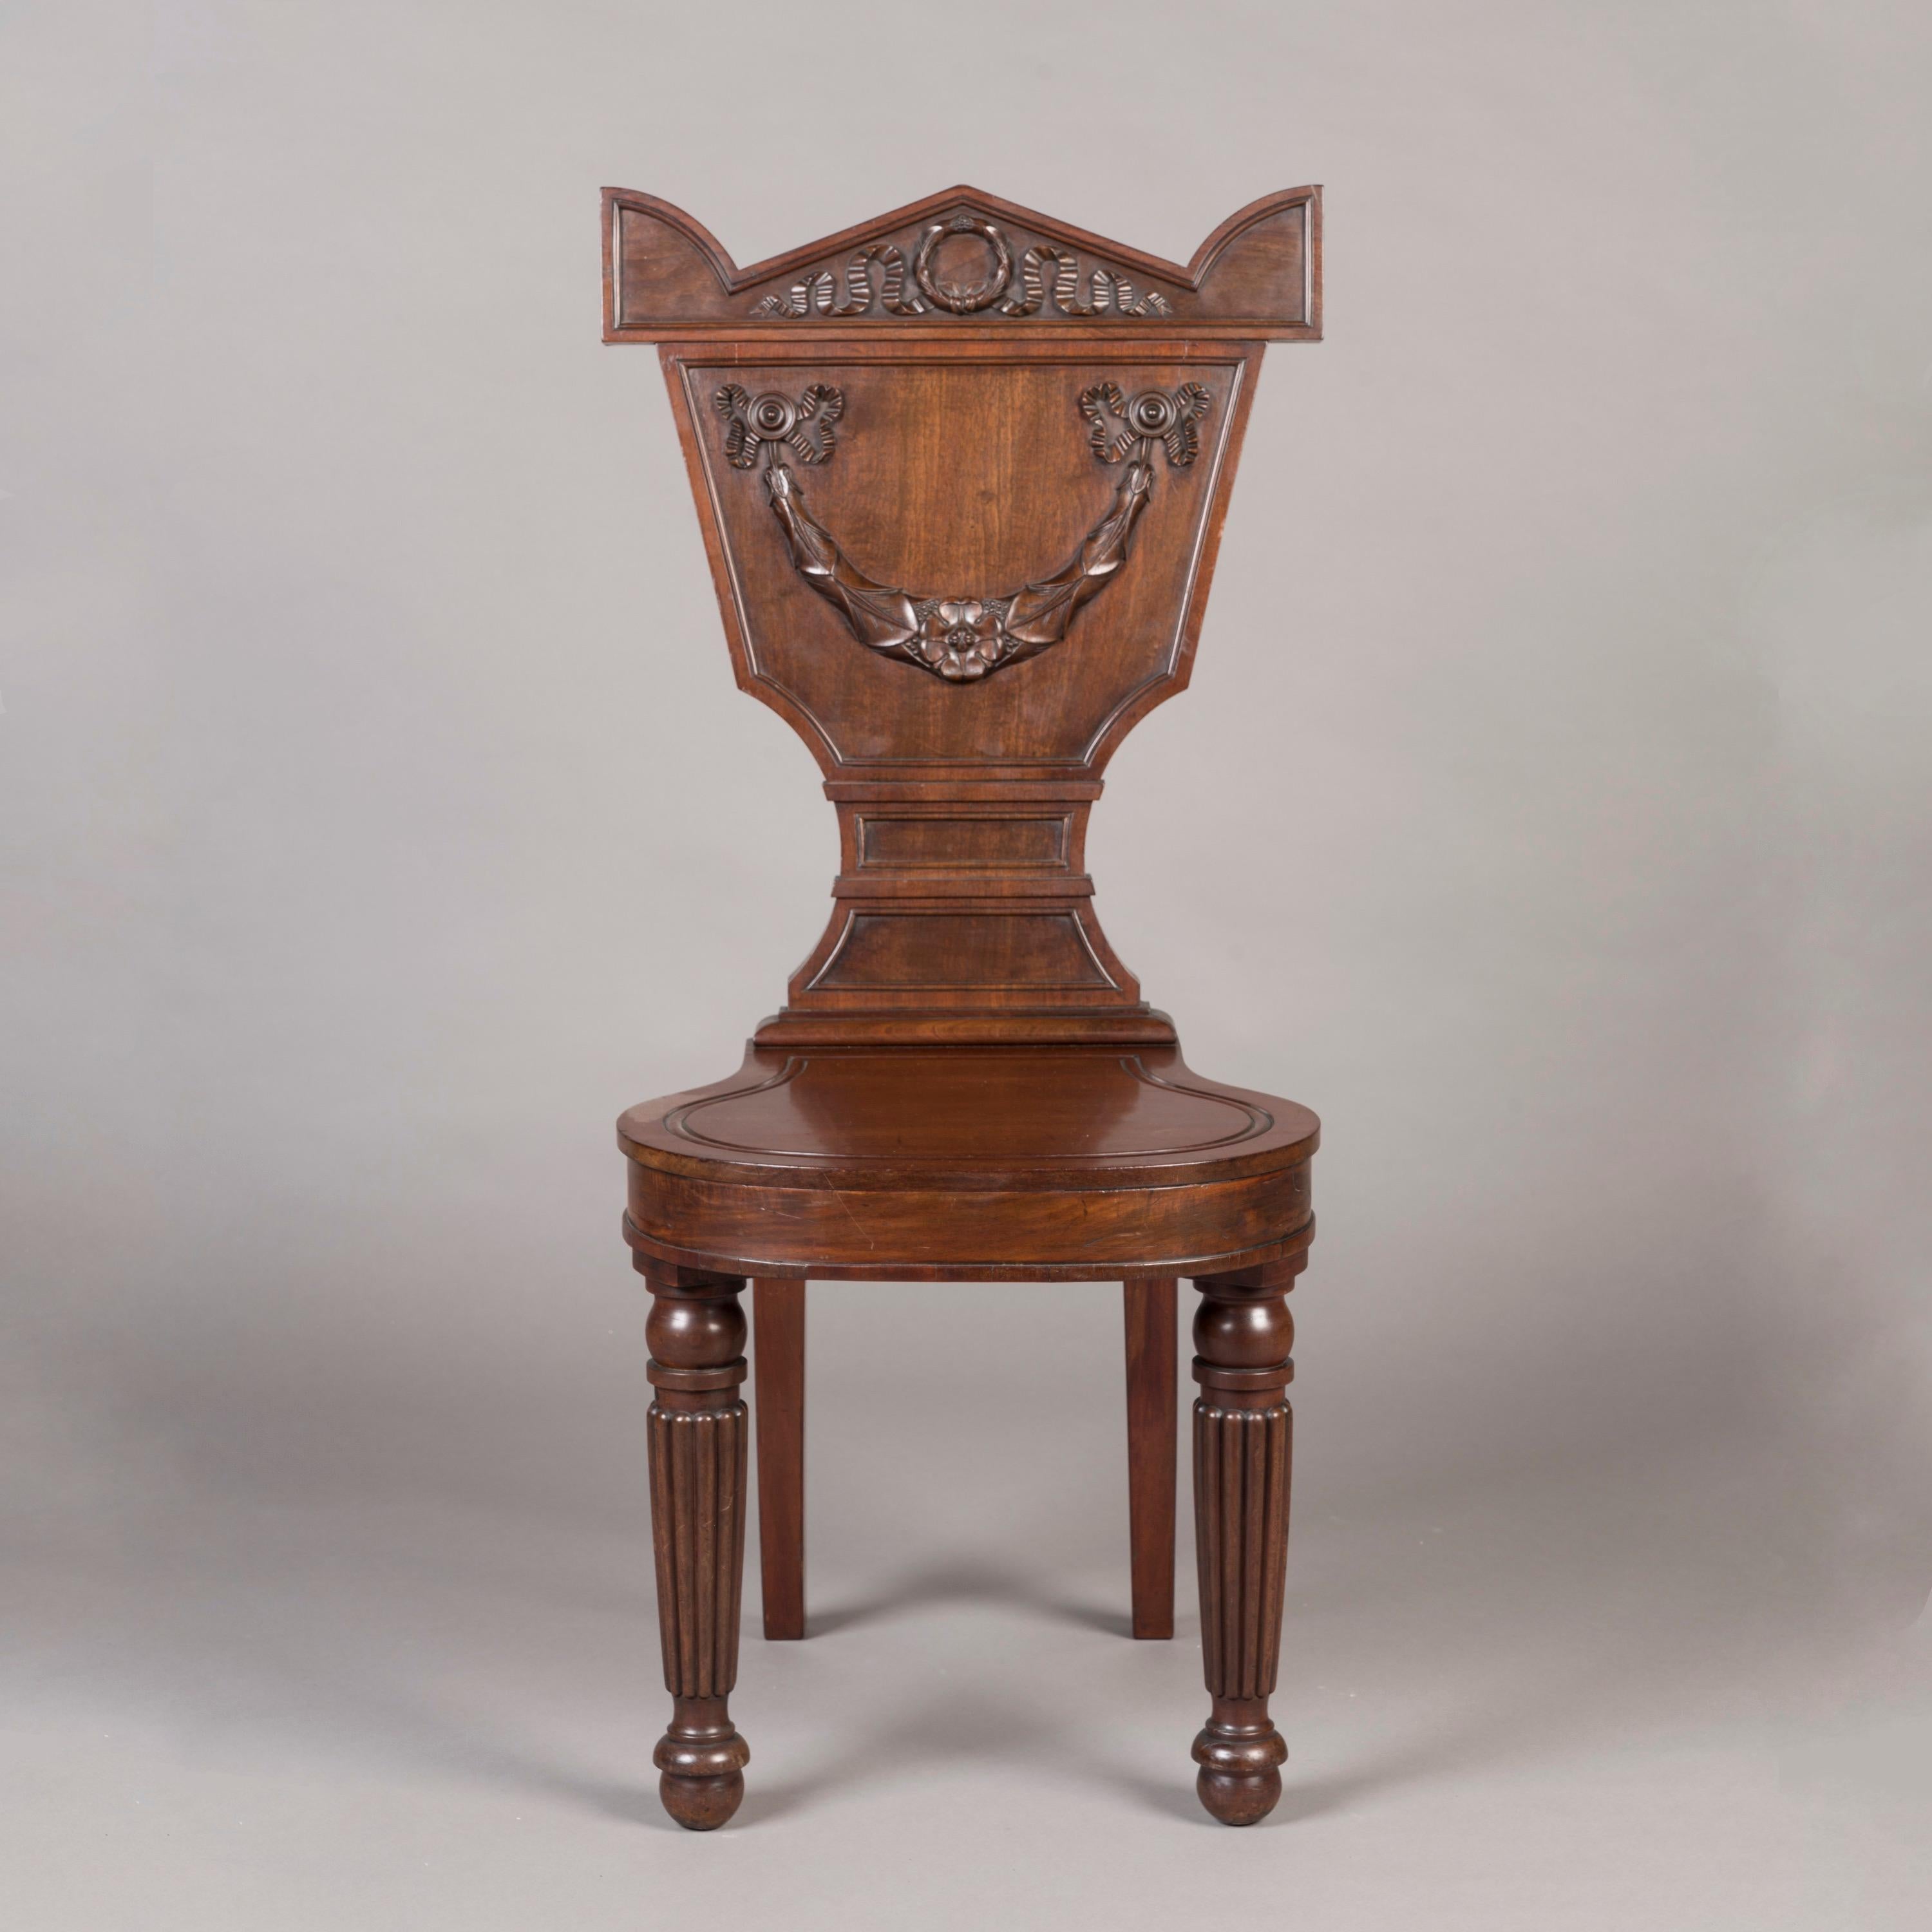 Paire de chaises de salon George IV
Par William Latham Huxley

Construite en acajou, elle possède de magnifiques pieds avant tournés et cannelés et d'élégants pieds sabres à l'arrière. Le dossier présente une forme cintrée très inhabituelle et est